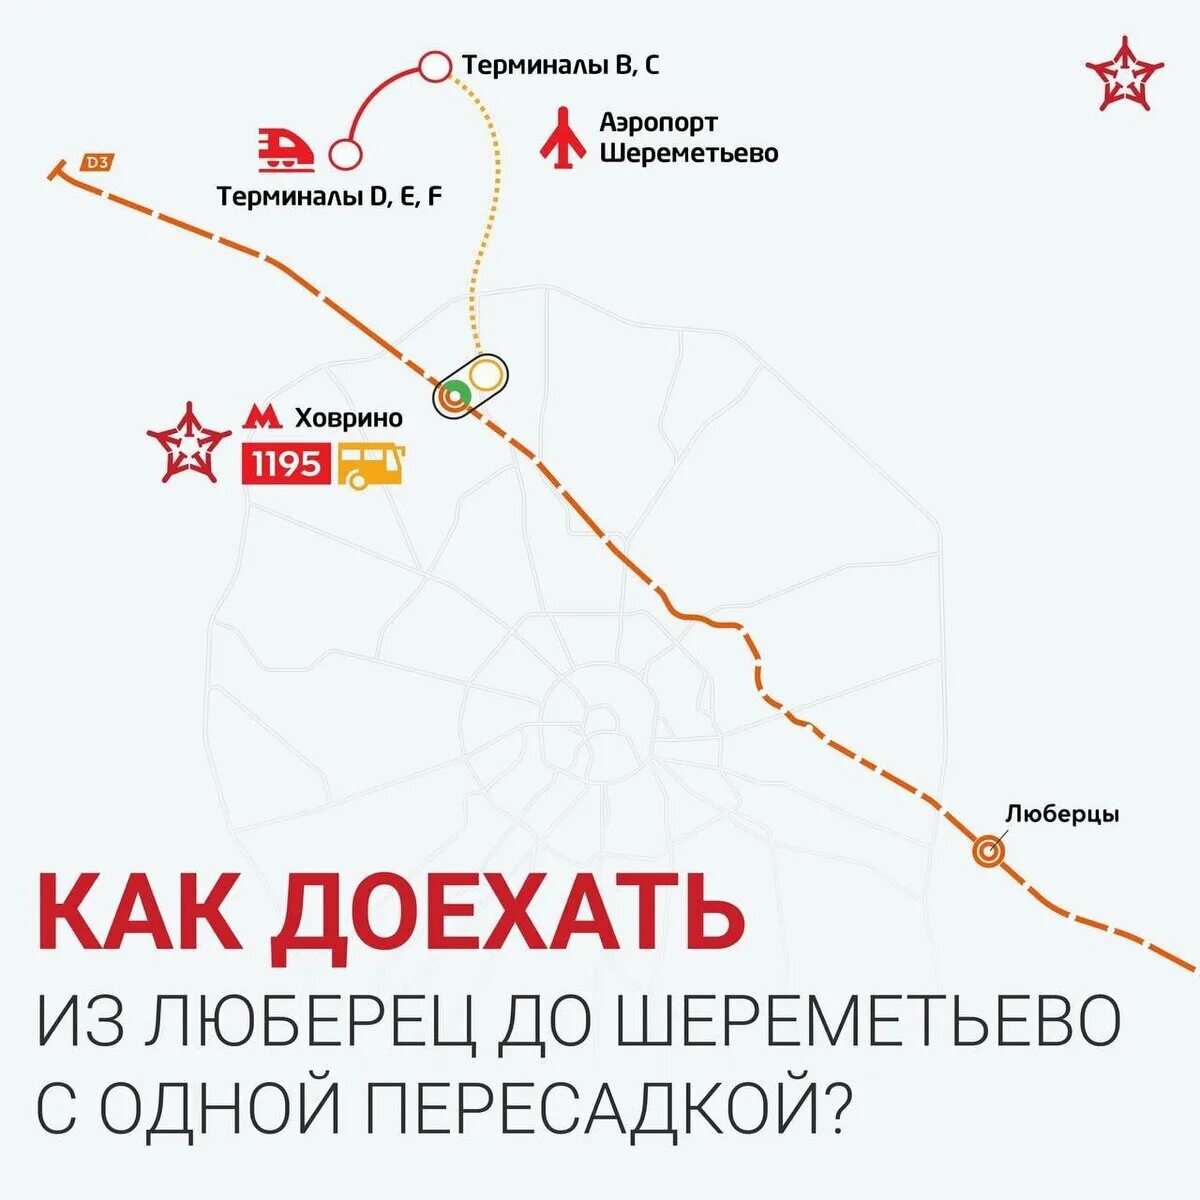 Ипподром Зеленоград МЦД-3. Аэропорт Шереметьево до Люберцы. Как добраться от Шереметьево до метро в Москве. Метро от Зеленограда до ипподрома.